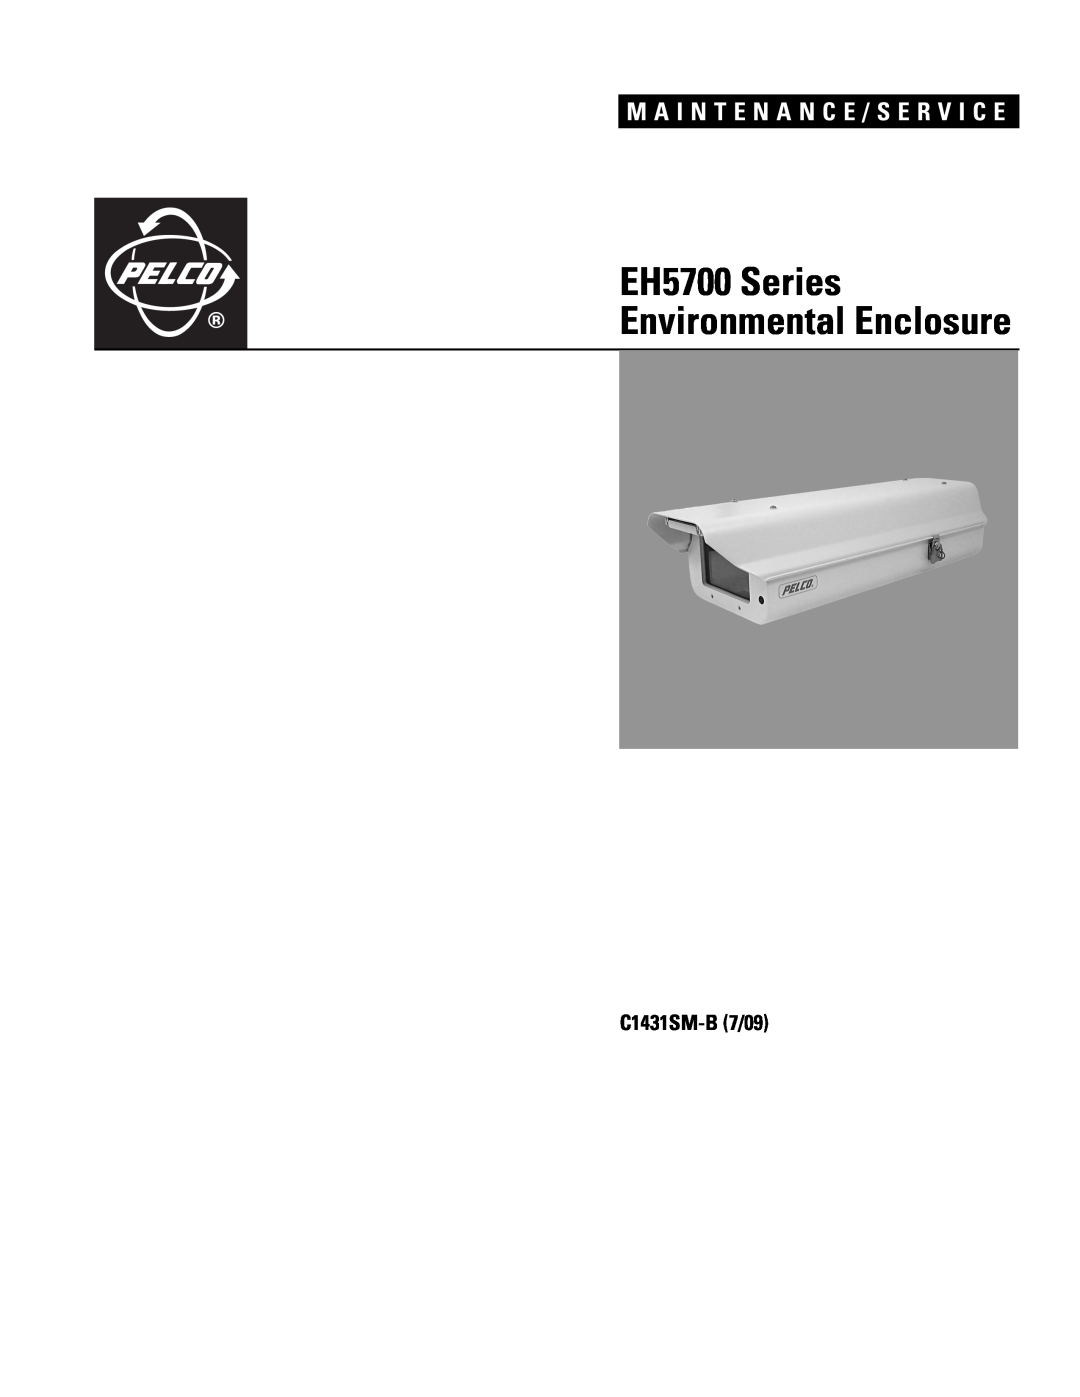 Pelco X1431SM-B (7/09) manual EH5700 Series Environmental Enclosure, M A I N T E N A N C E / S E R V I C E, C1431SM-B7/09 